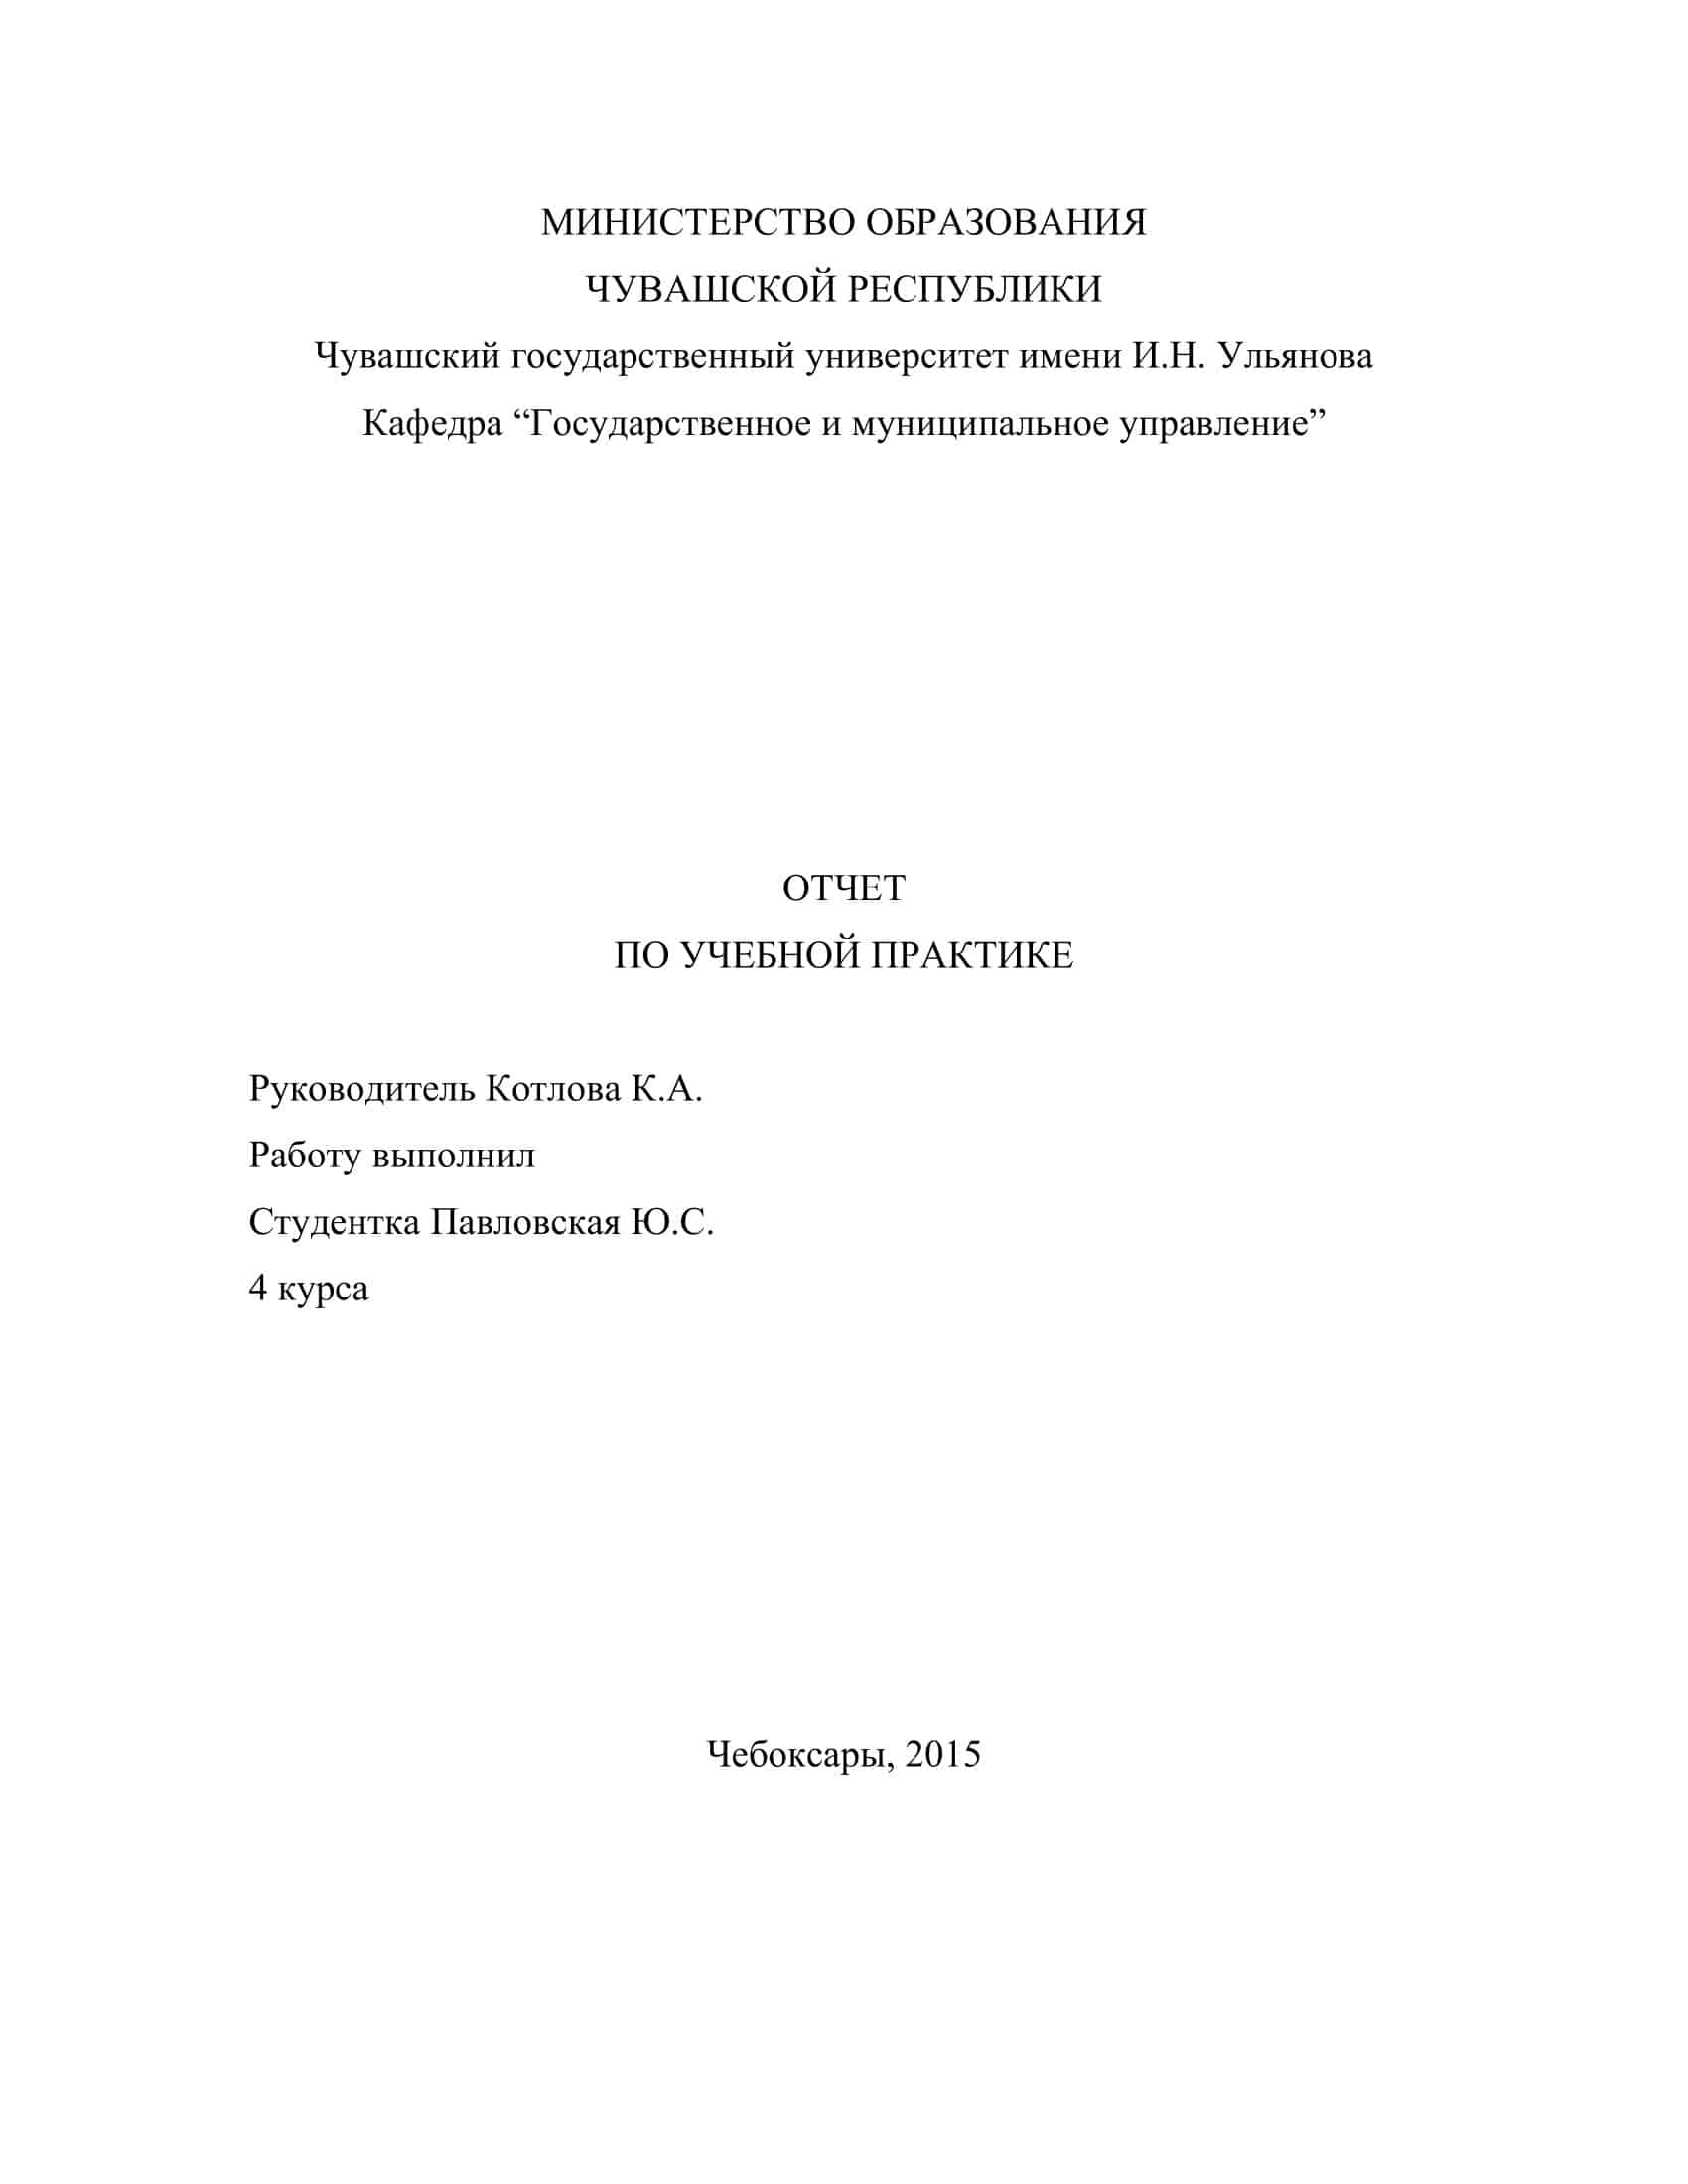 Отчет по практике: Министерство финансов Чеченской Республики